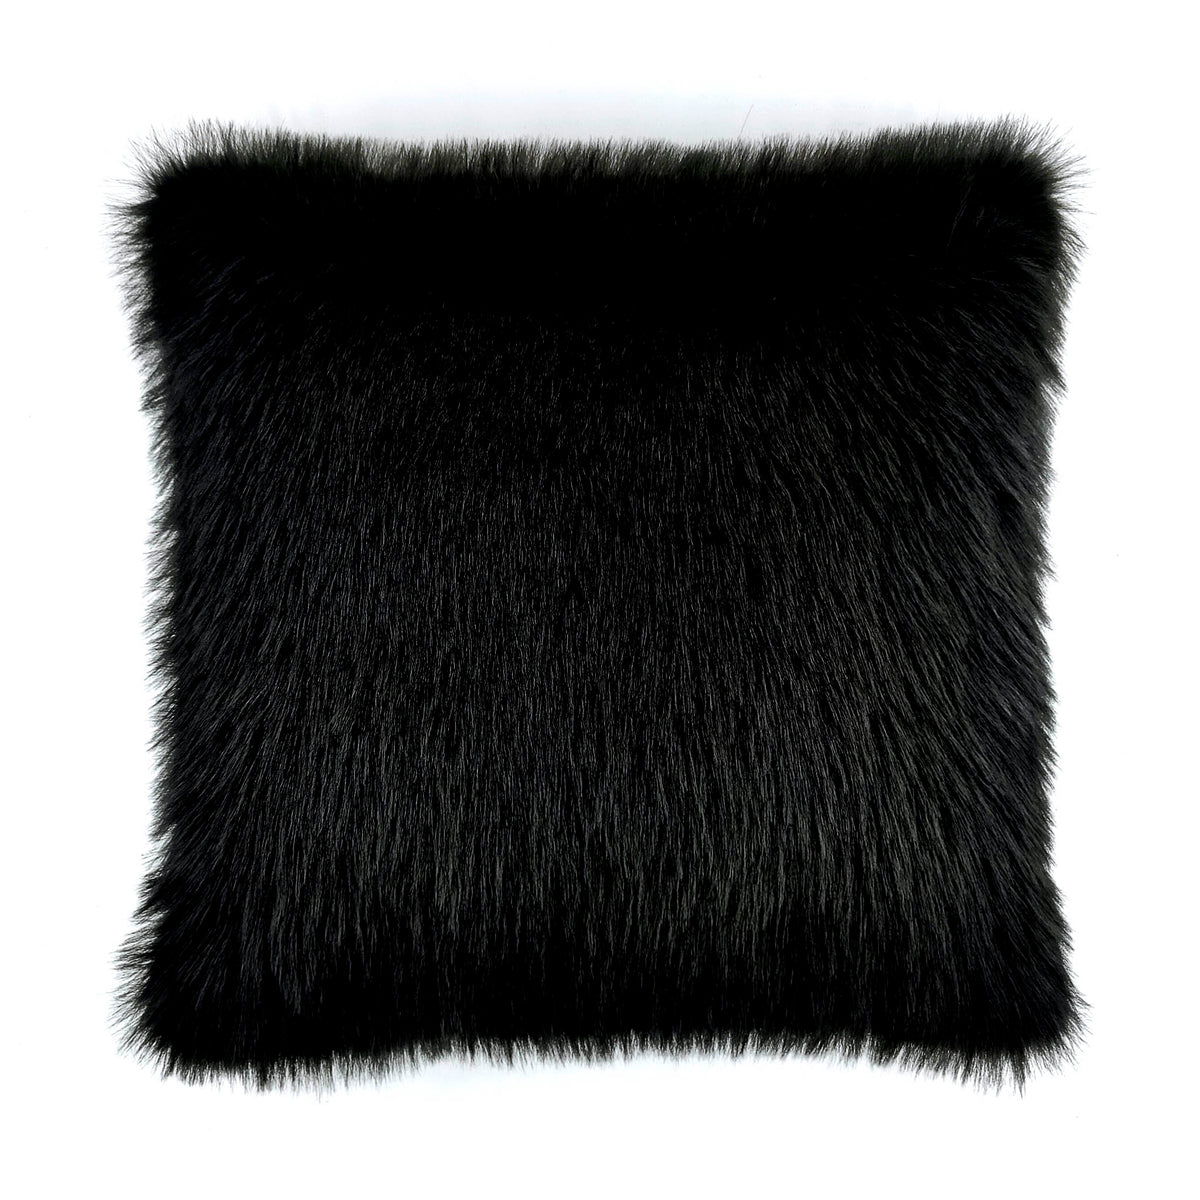 Sierkussen Perle Black is Black - Fake Fur